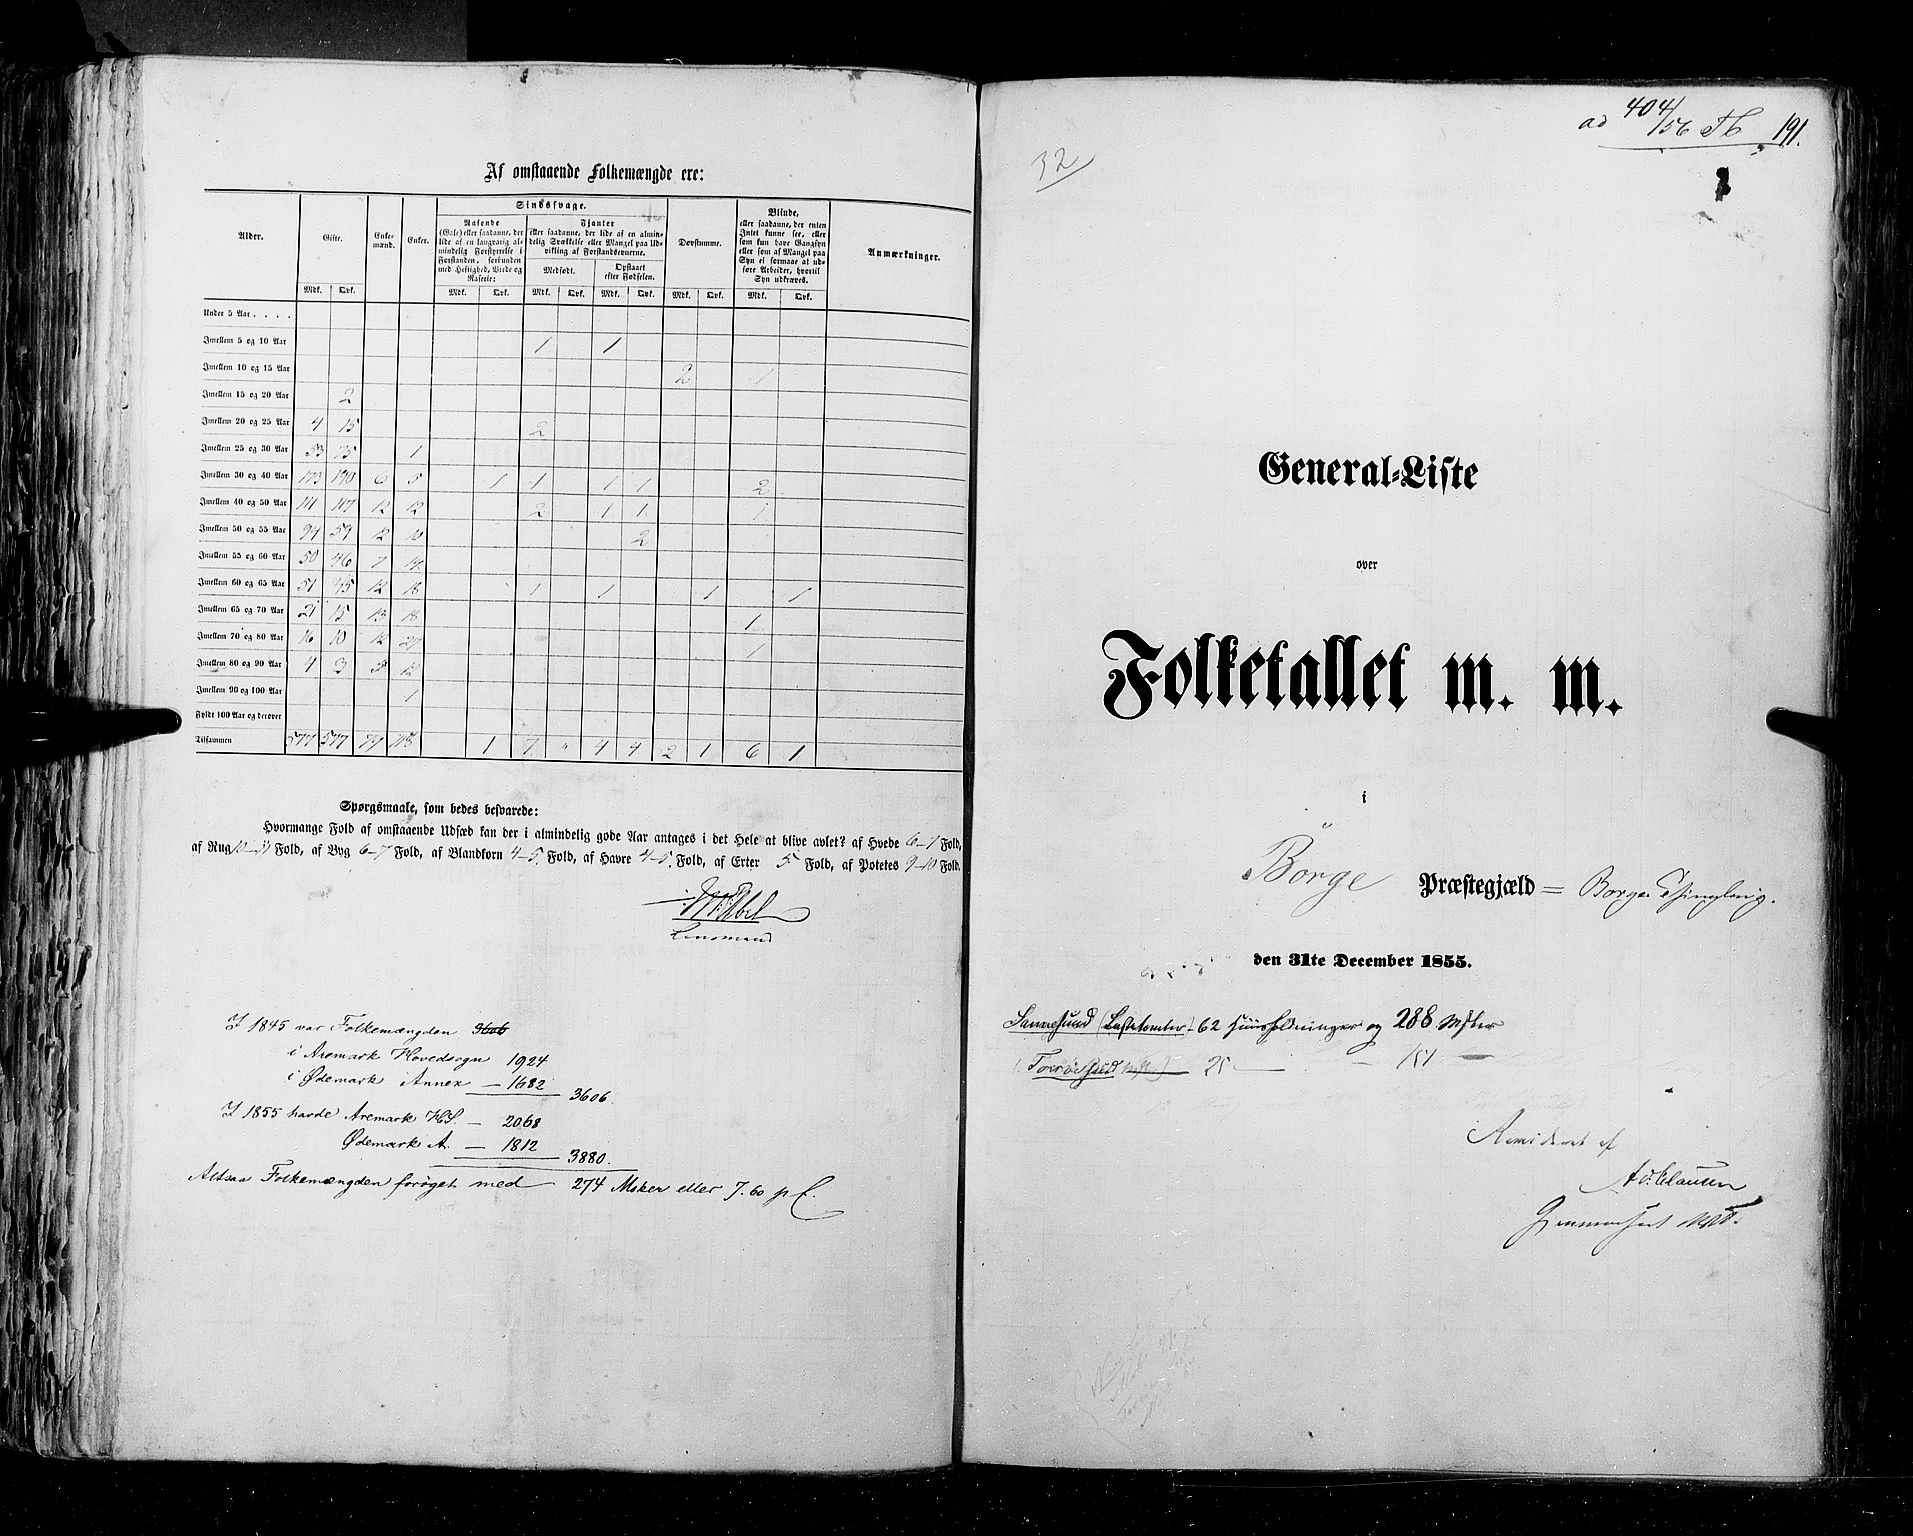 RA, Census 1855, vol. 1: Akershus amt, Smålenenes amt og Hedemarken amt, 1855, p. 191